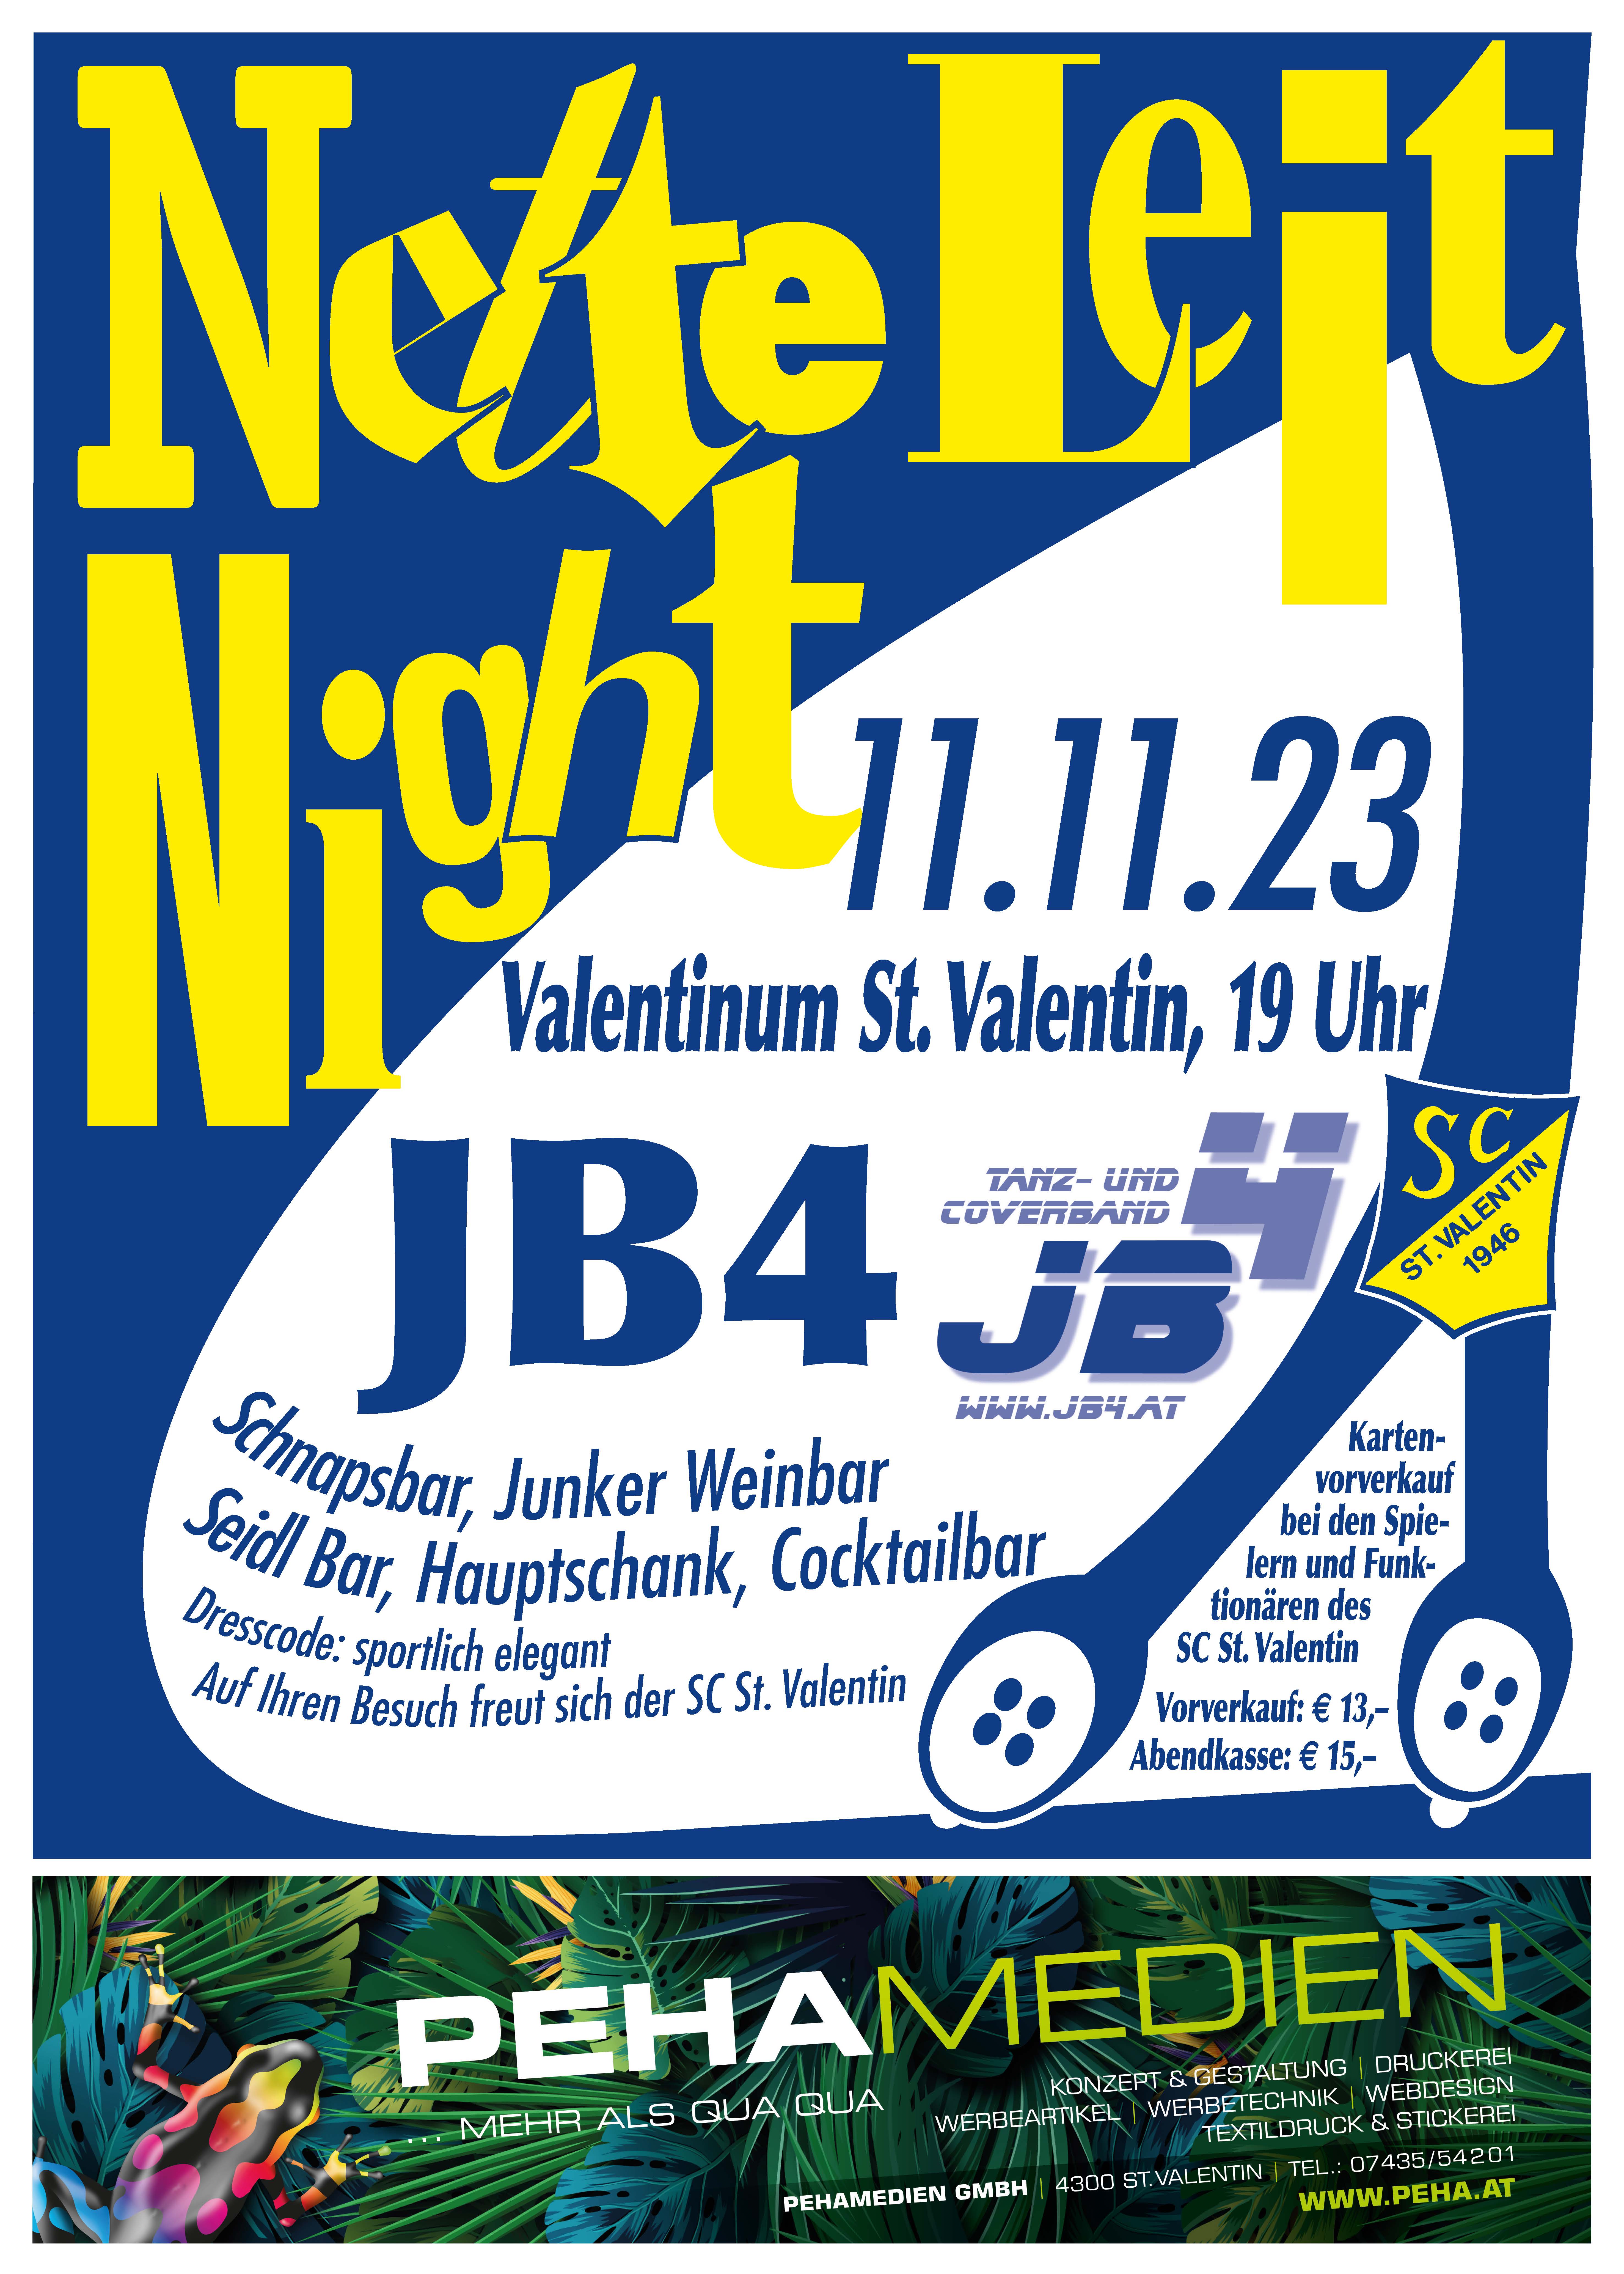 Nette Leit Night 2023